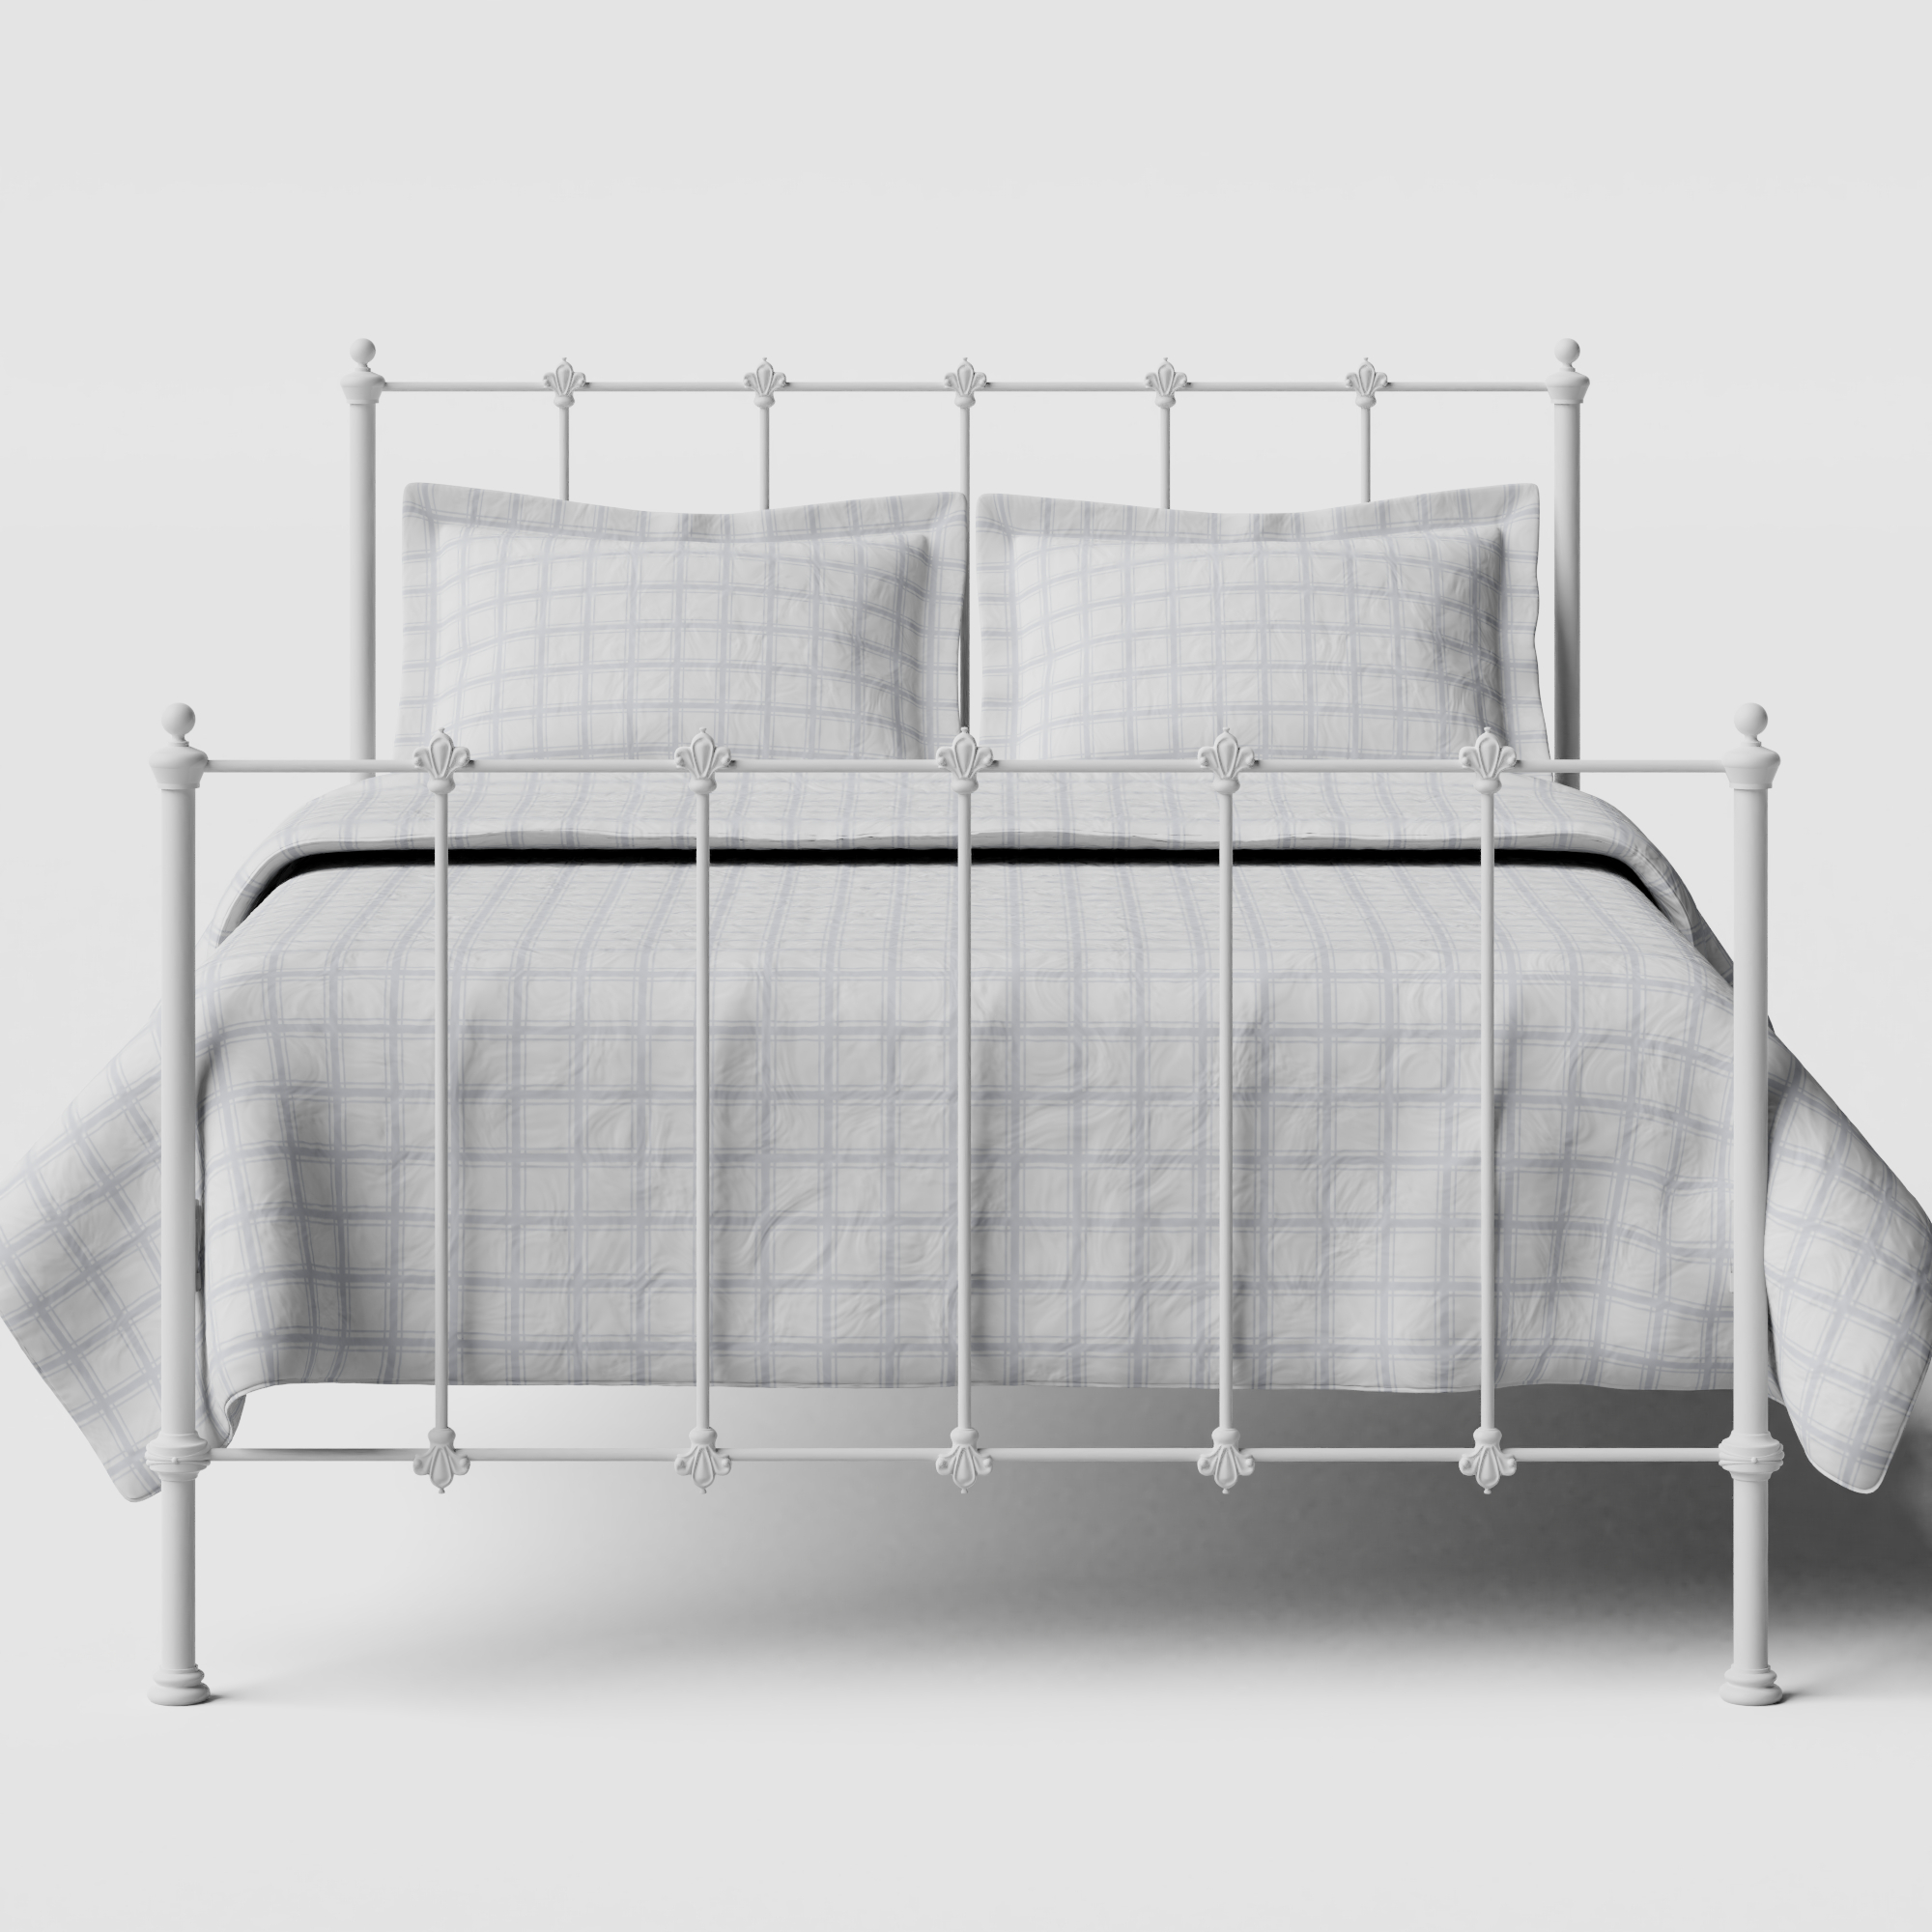 Paris iron/metal bed in white